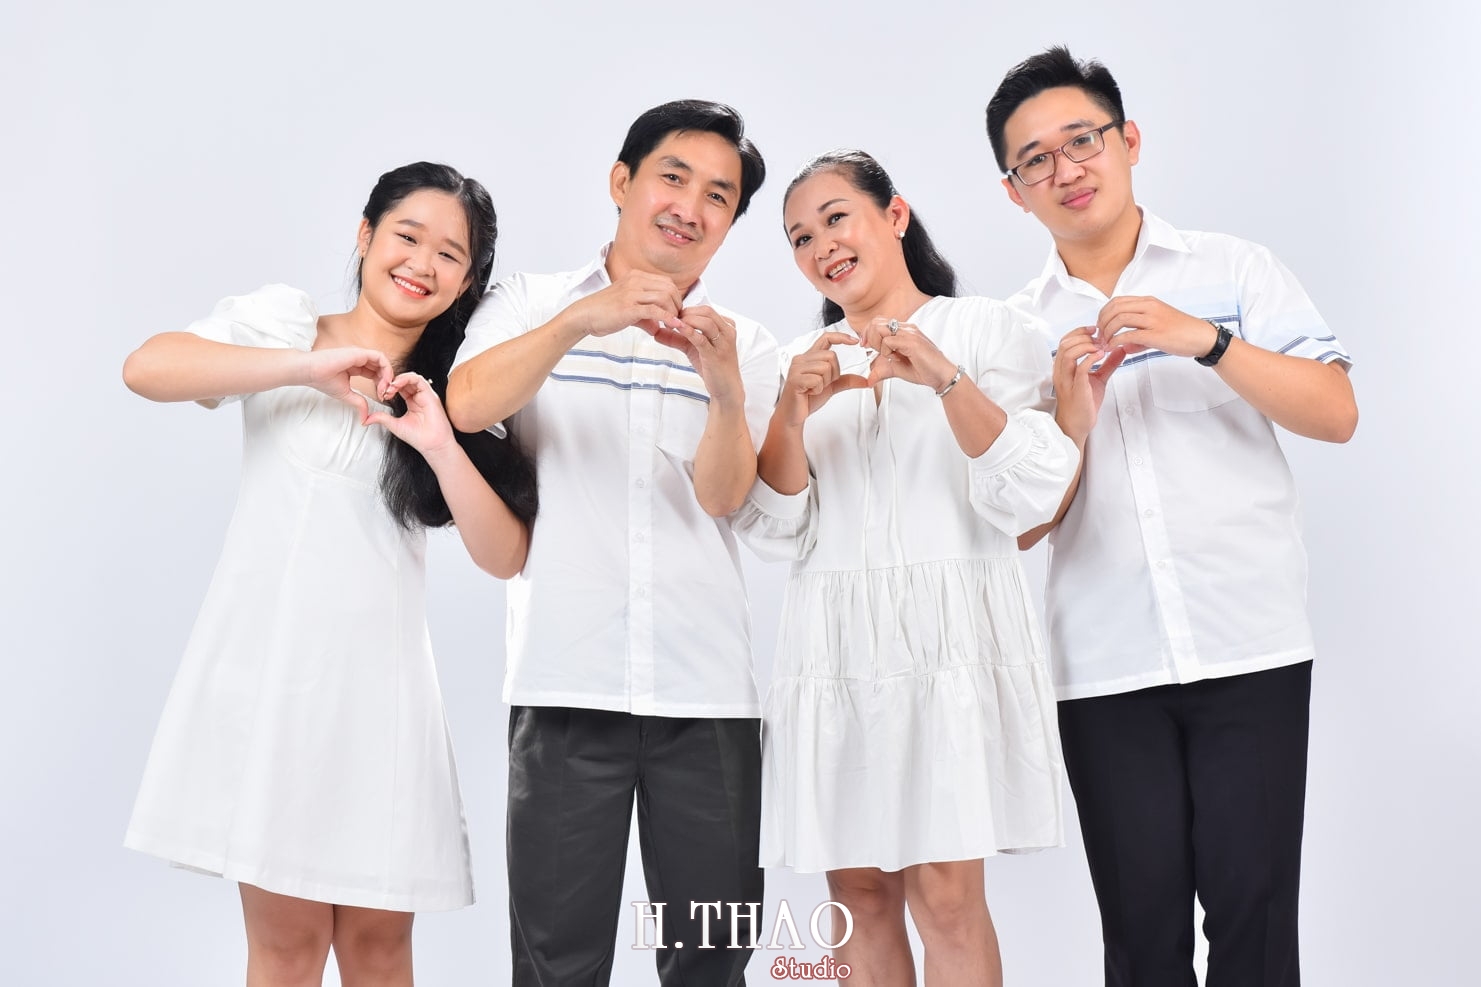 Anh gia dinh 11 min - Dịch vụ chụp ảnh kỷ niệm ngày cưới - HThao Studio